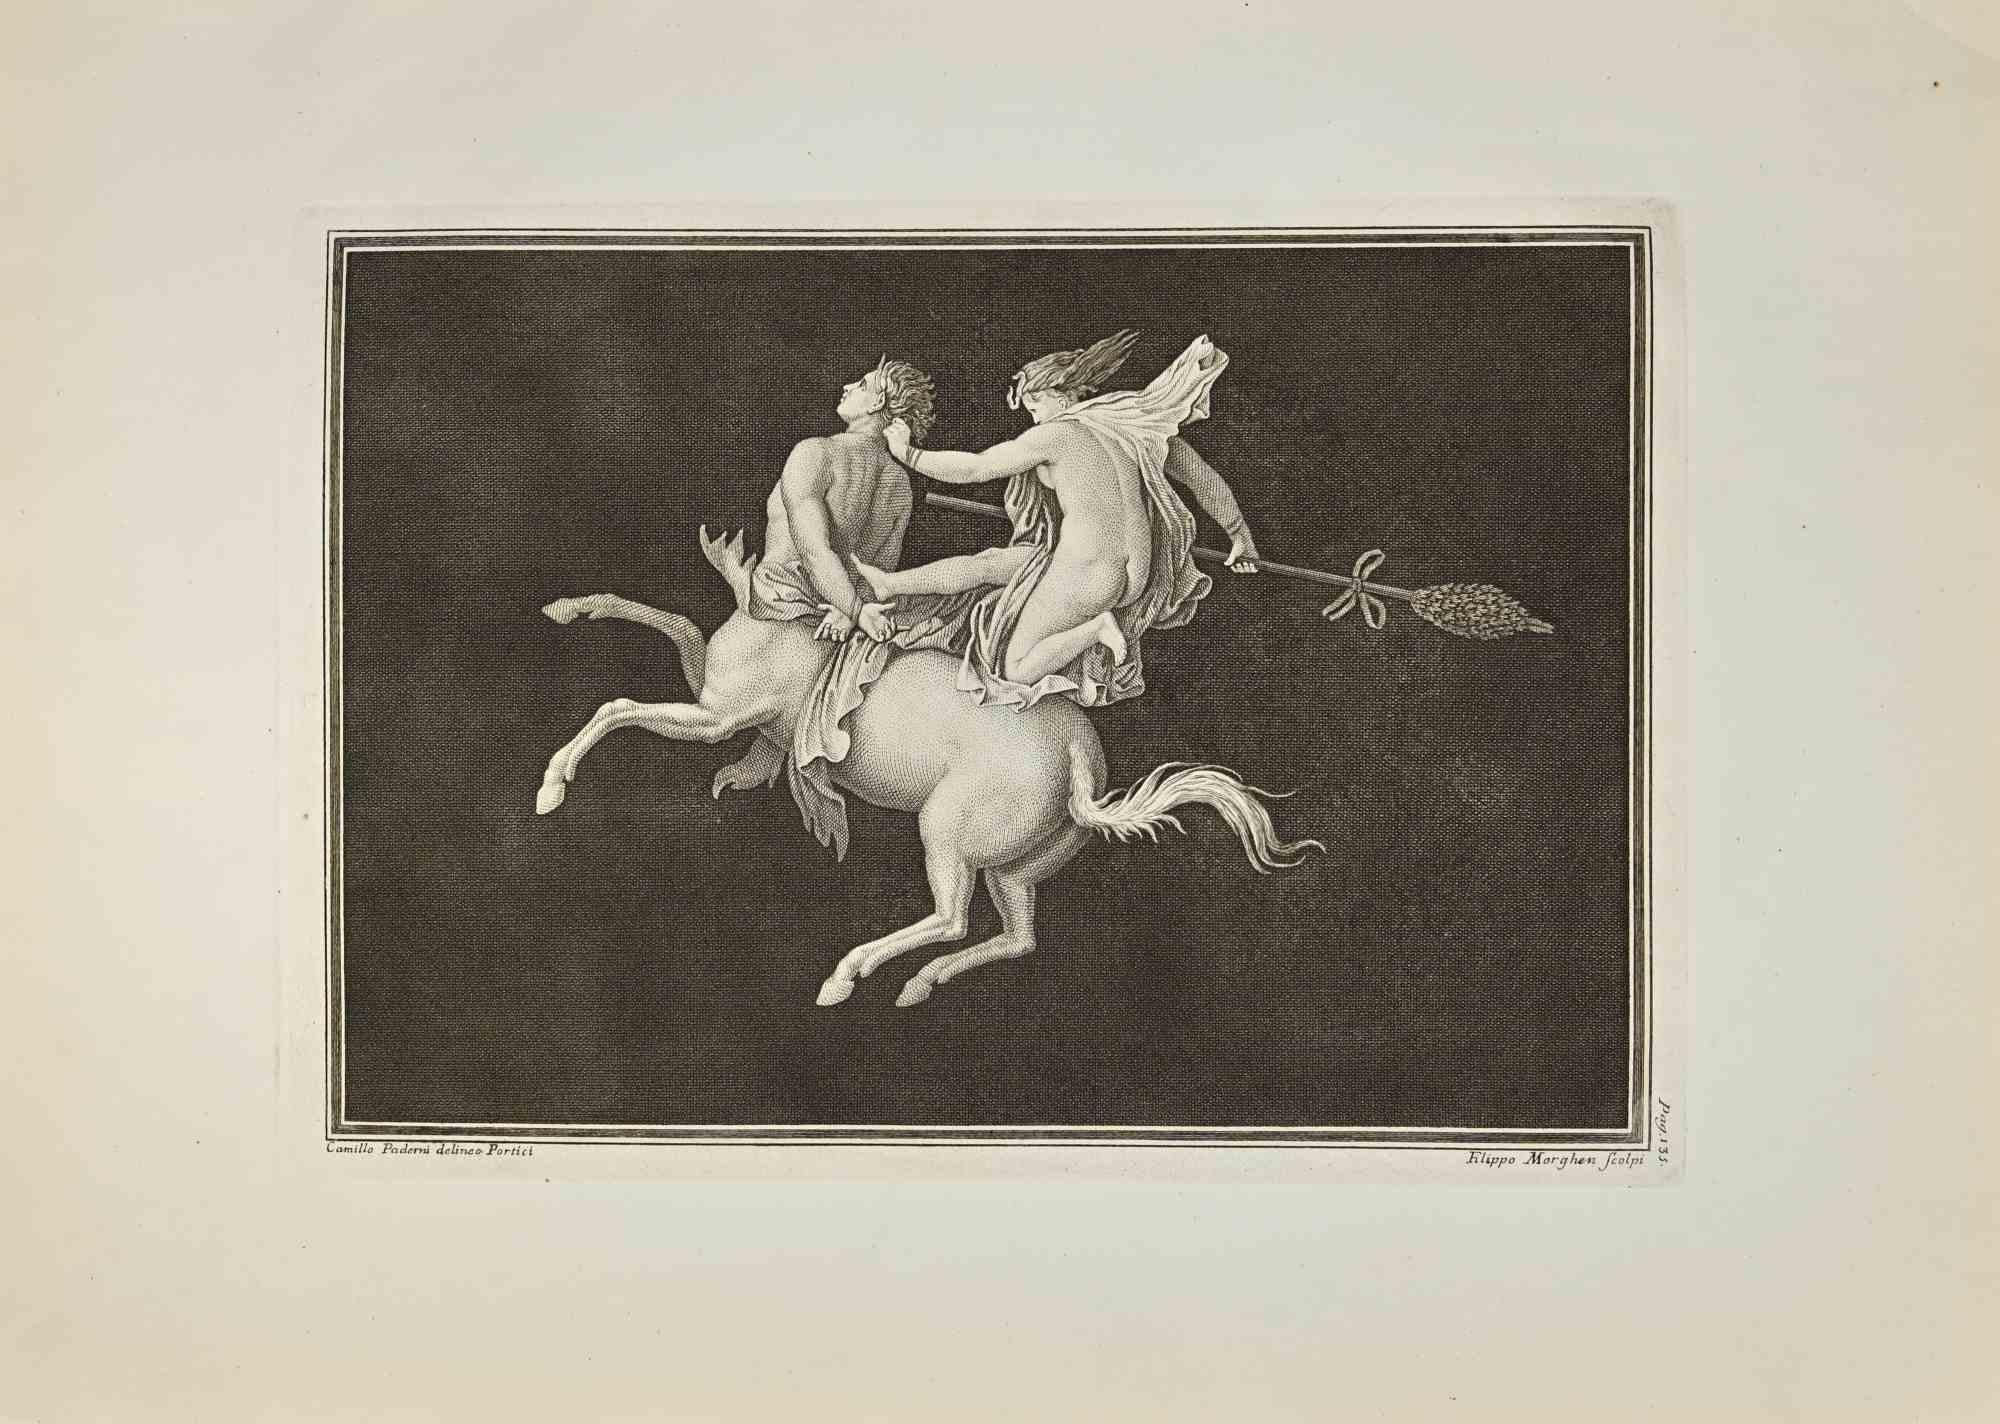 Heracles in Combat With Centaur from "Antiquities of Herculaneum" est une gravure sur papier réalisée par Filippo Morghen d'après Camillus Paderni au 18ème siècle.

Signé sur la plaque.

Bonnes conditions et marges vieillies.

La gravure appartient